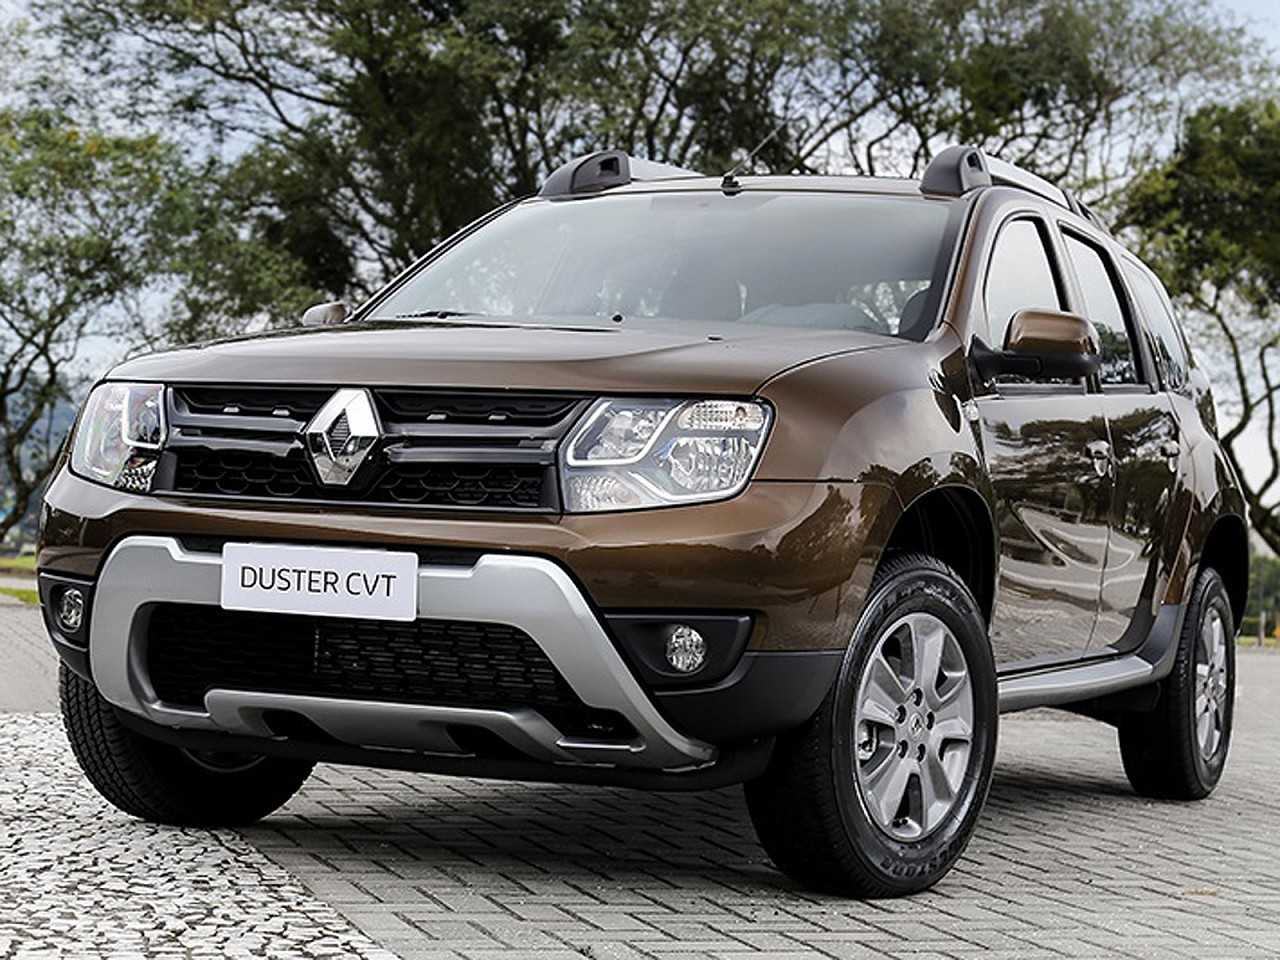 Opinião sobre a compra de um Renault Duster com isenção de IPI